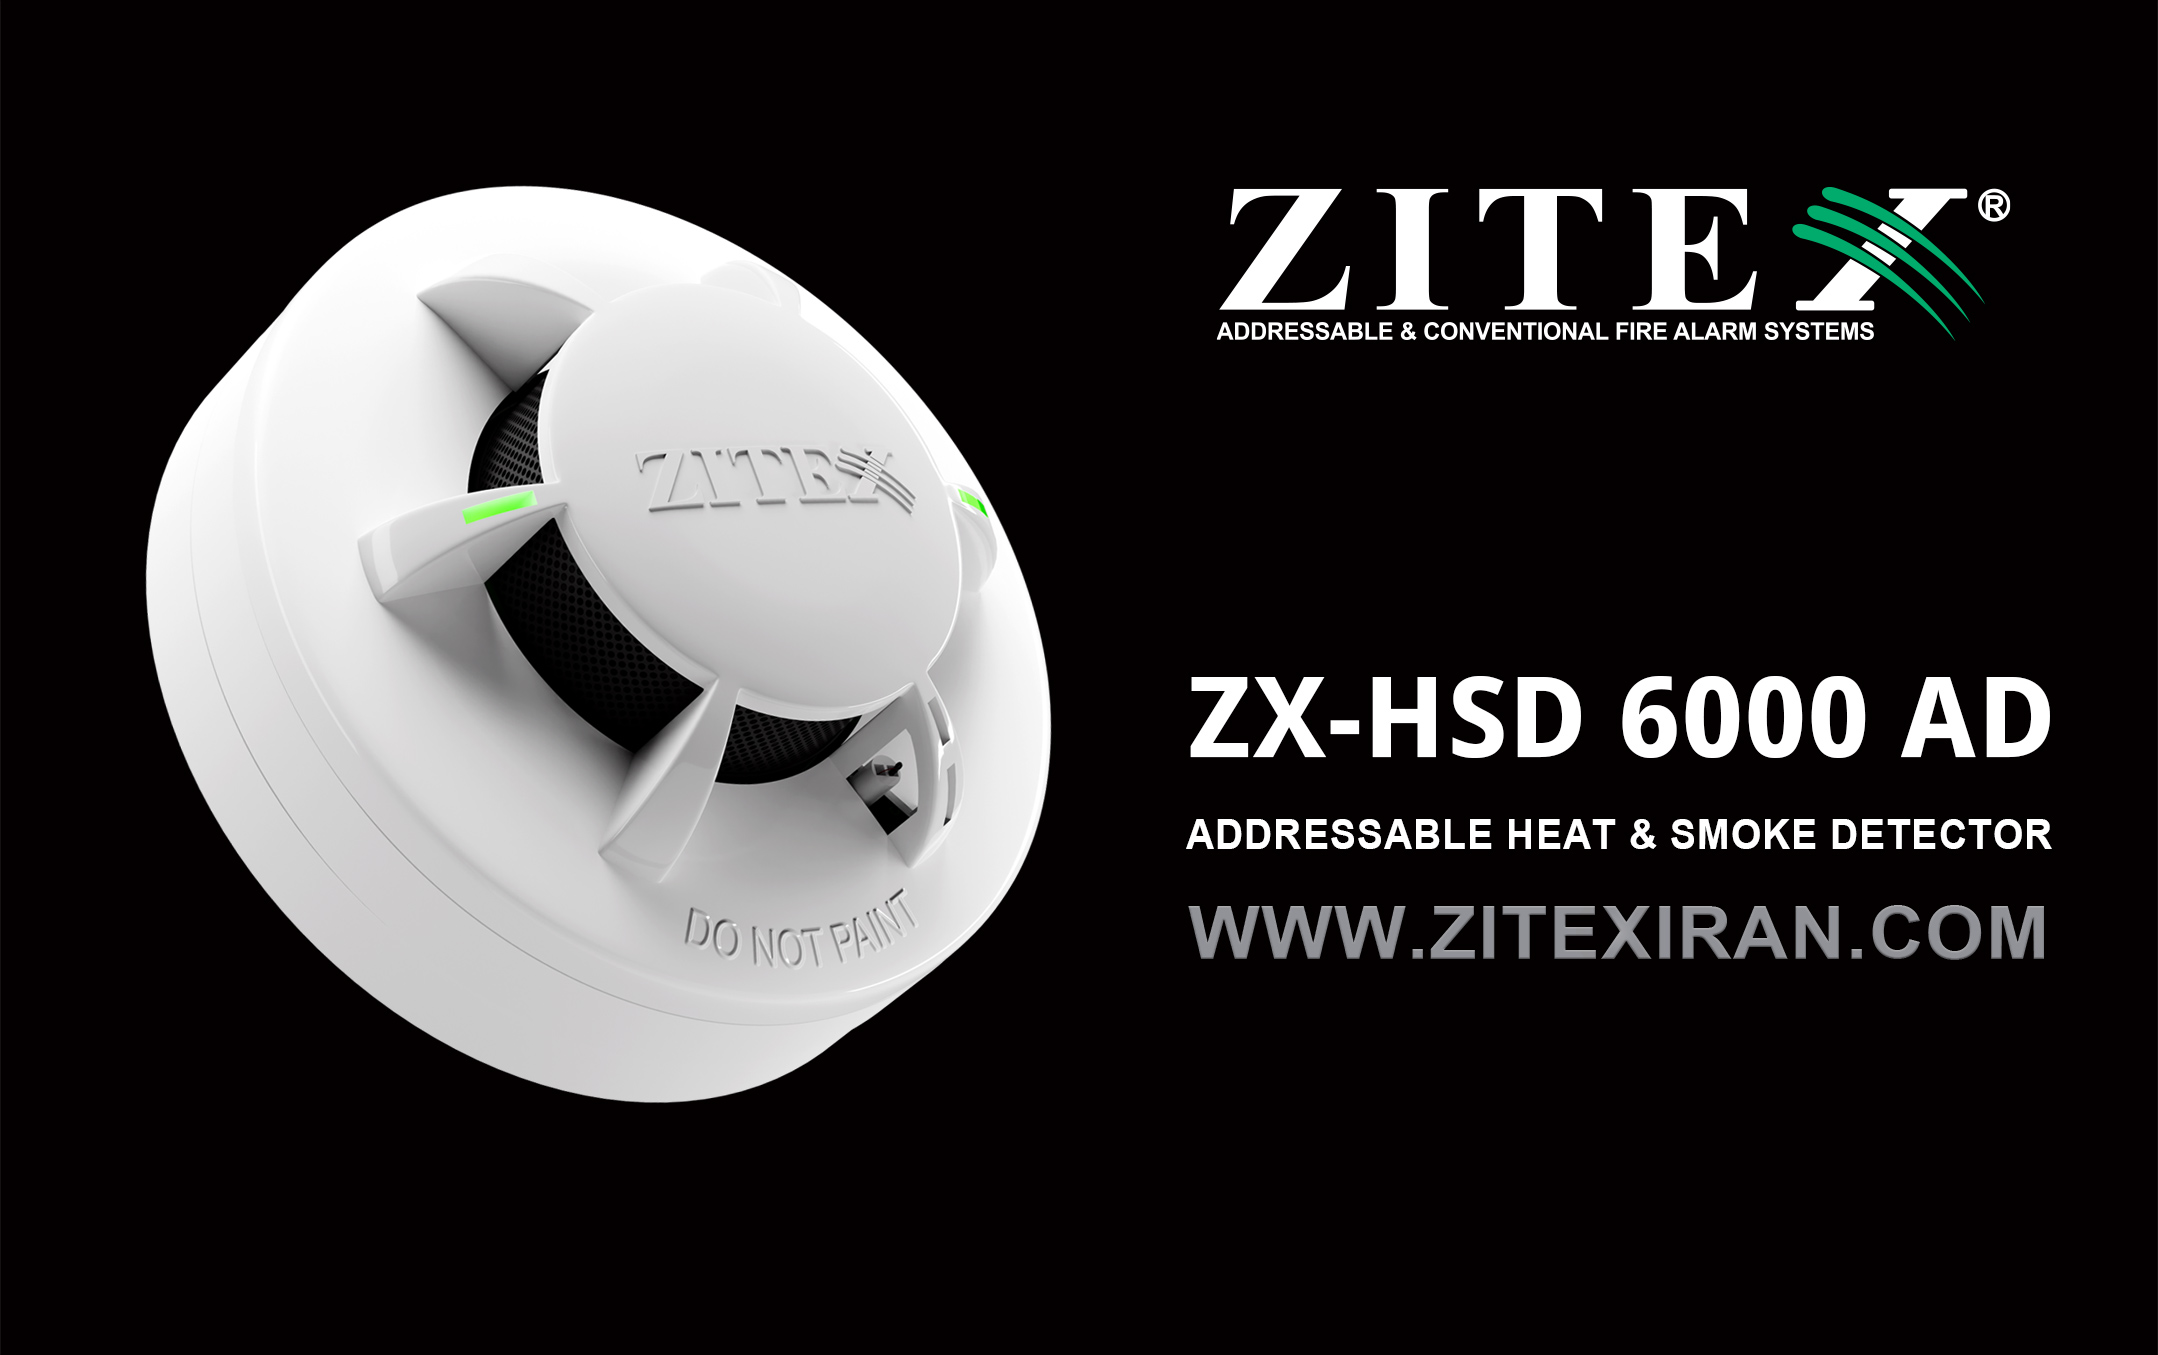 دتکتور ترکیبی دود و حرارت آدرس پذیر ZX-HSD 6000 AD زیتکس